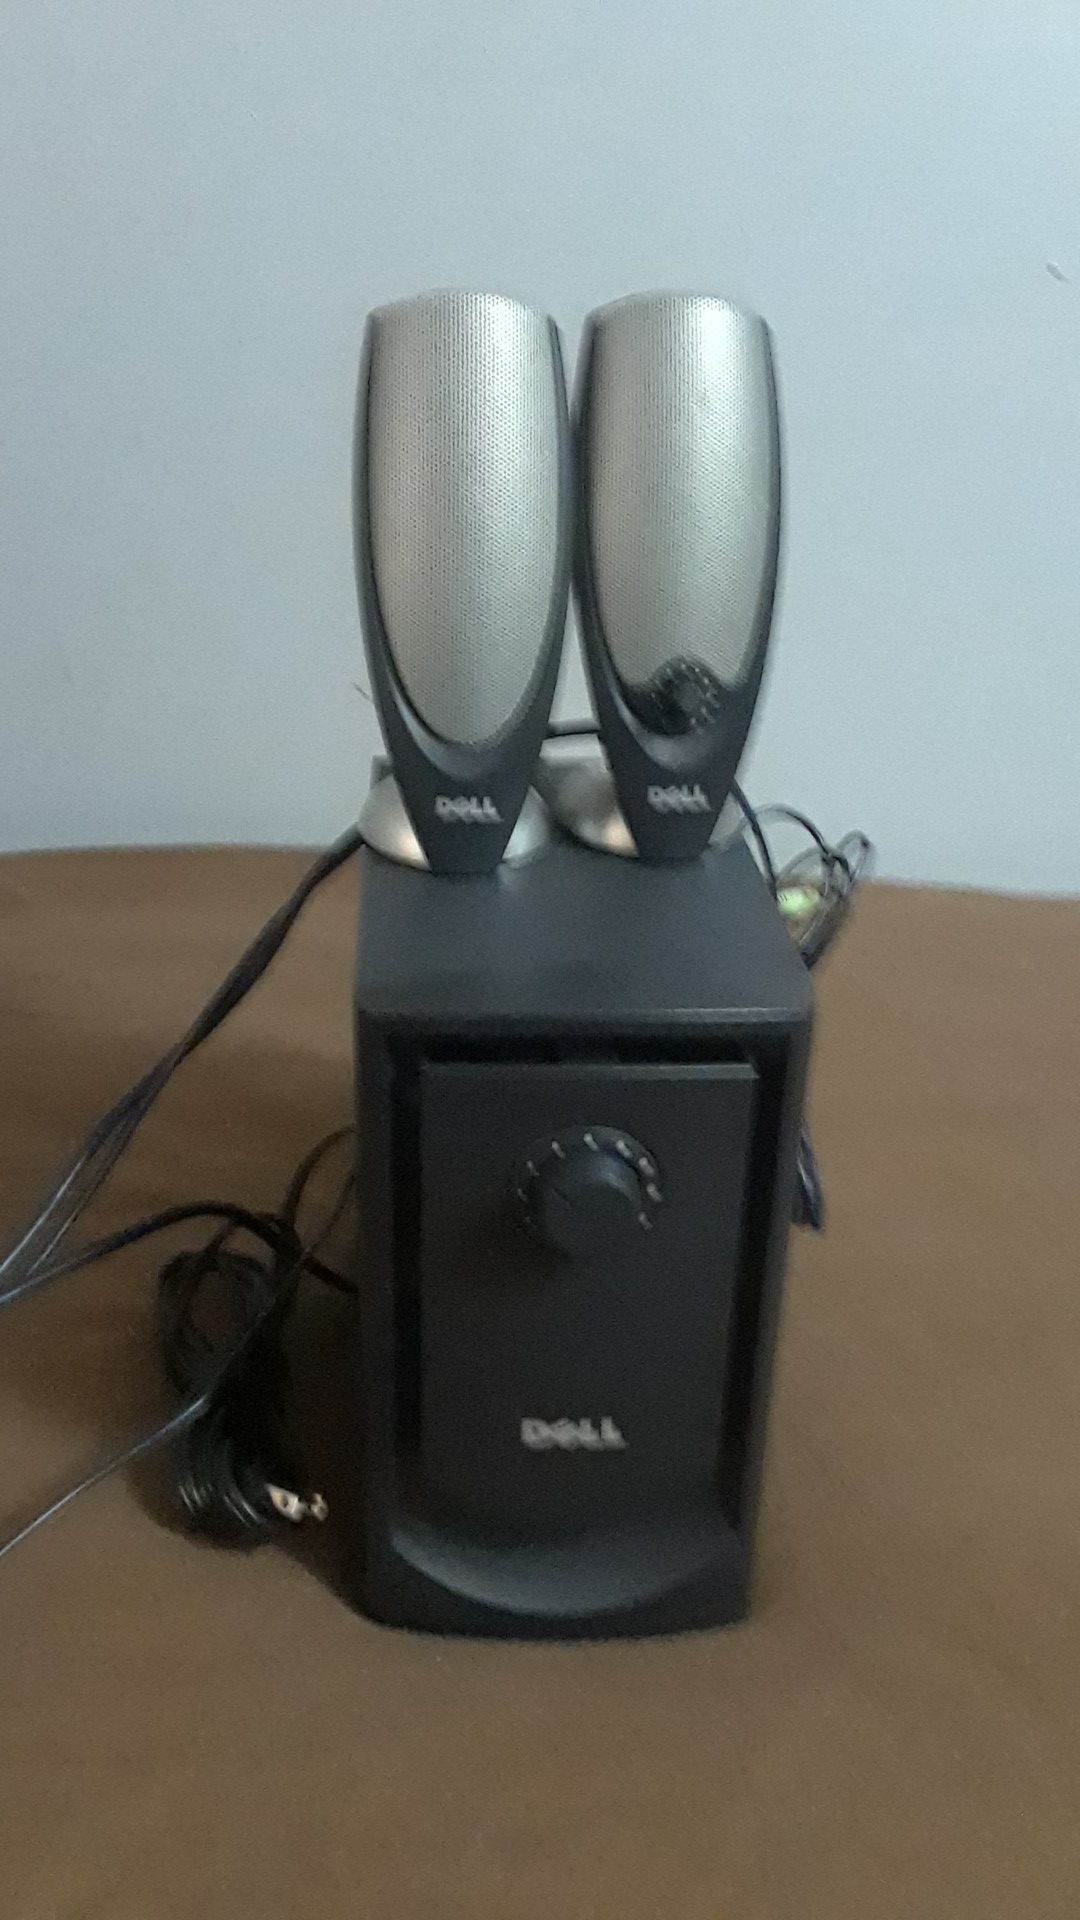 Dell subwoofer computer speaker system